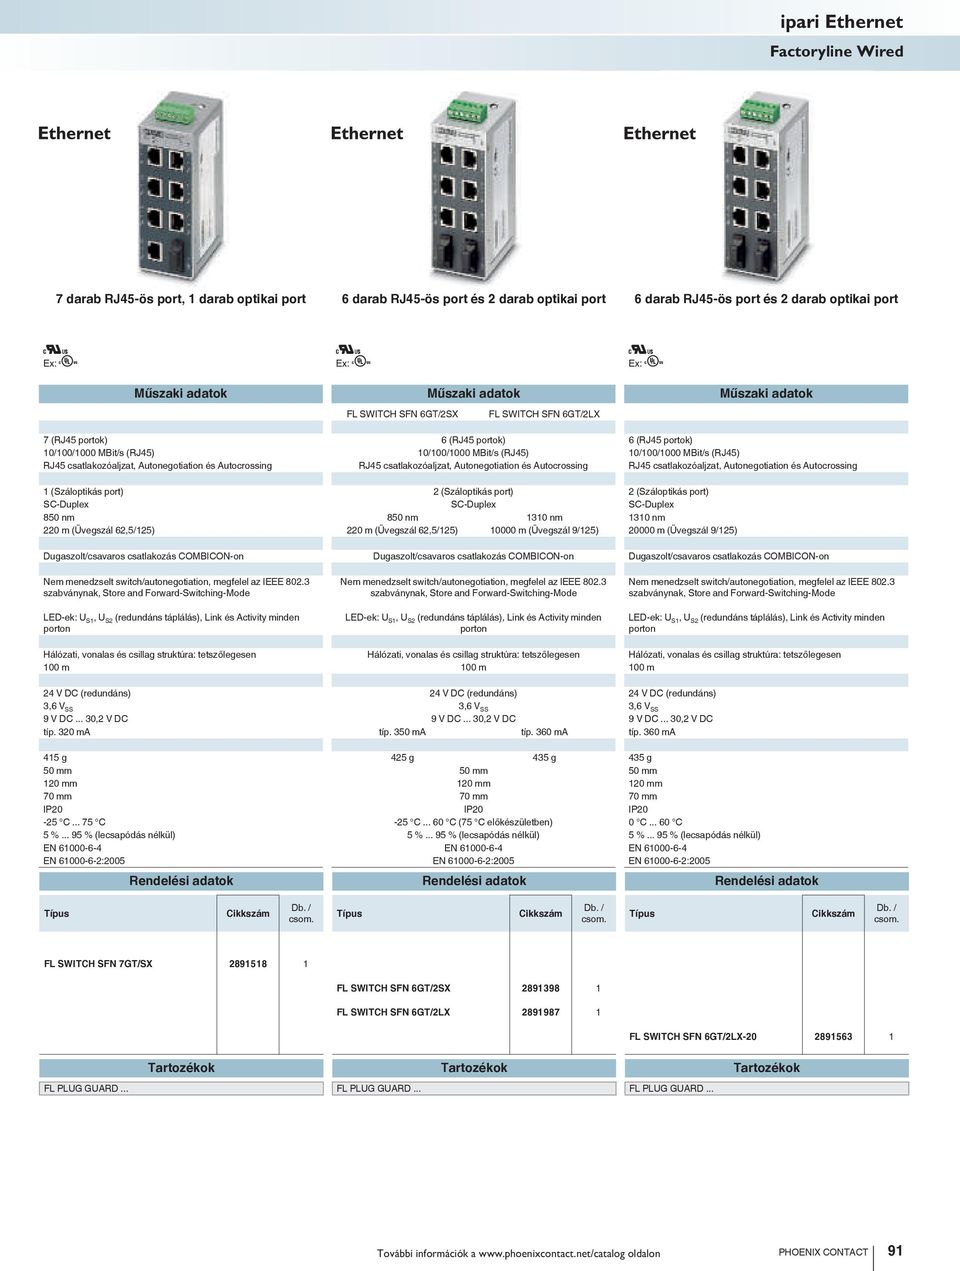 Autonegotiation és Autocrossing RJ45 csatlakozóaljzat, Autonegotiation és Autocrossing 1 (Száloptikás port) 2 (Száloptikás port) 2 (Száloptikás port) SC-Duplex SC-Duplex SC-Duplex 850 nm 850 nm 1310